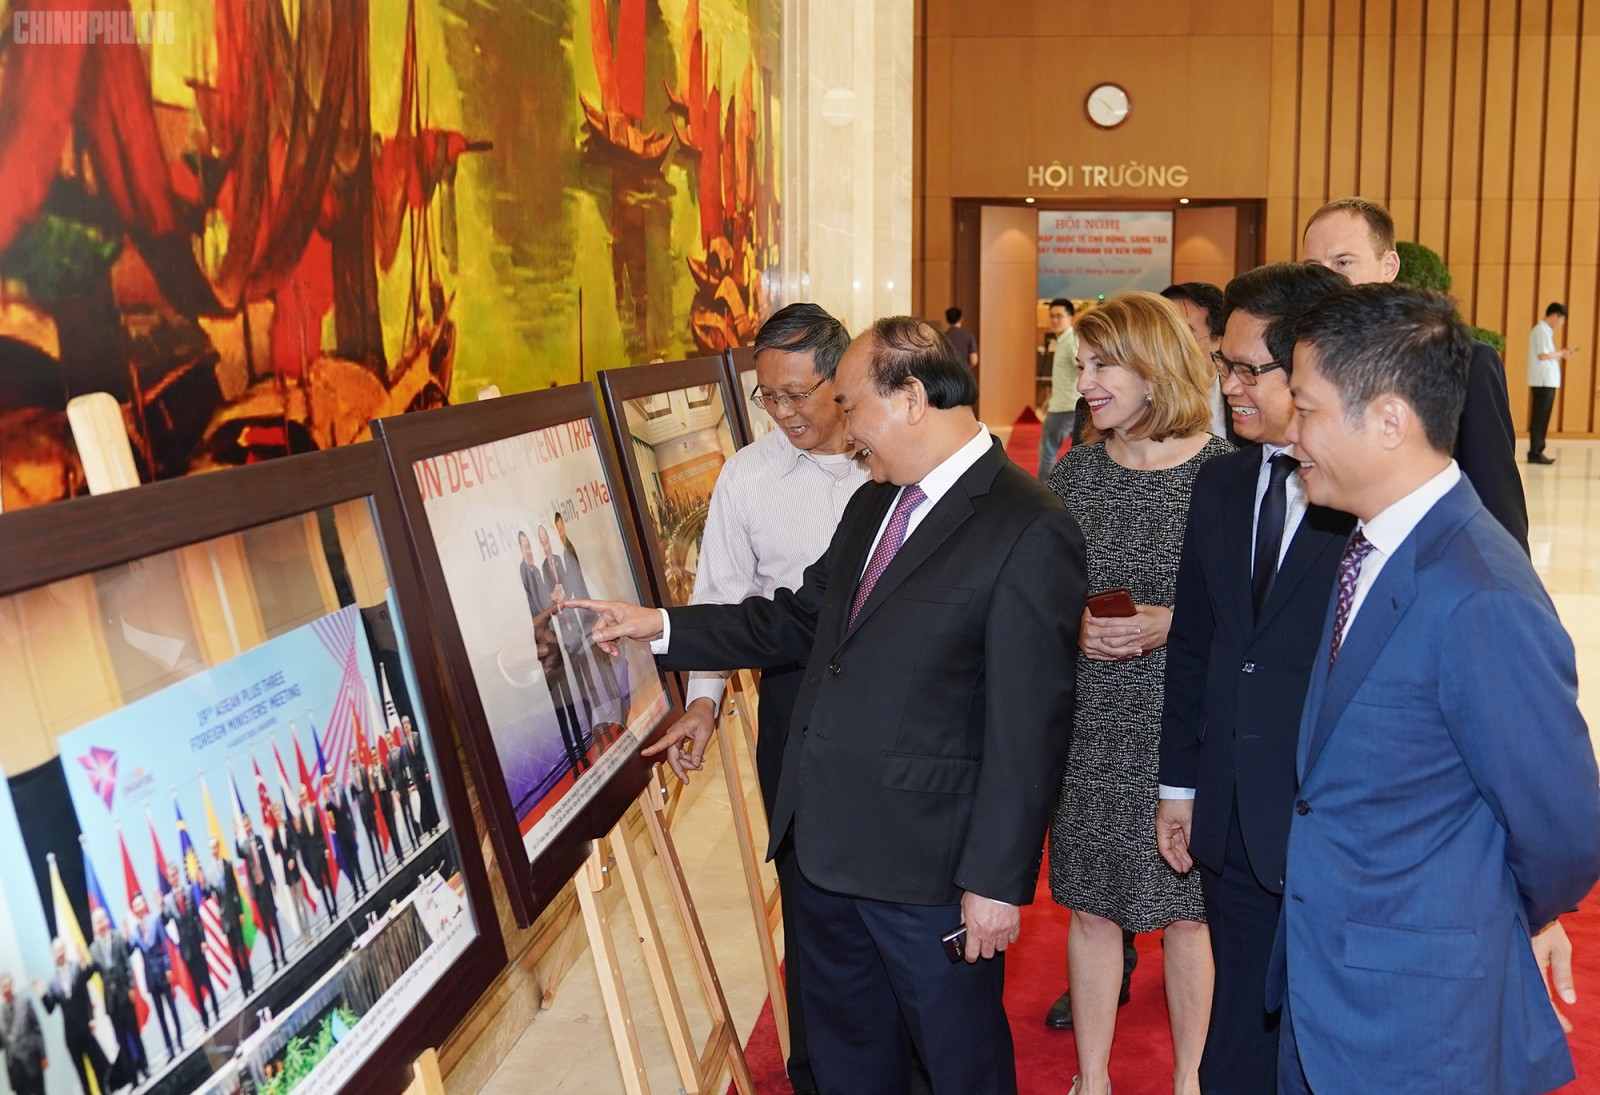 Thủ tướng Nguyễn Xuân Phúc và các đại biểu tham quan triển lãm ảnh đối ngoại. Ảnh: VGP/Quang Hiếu